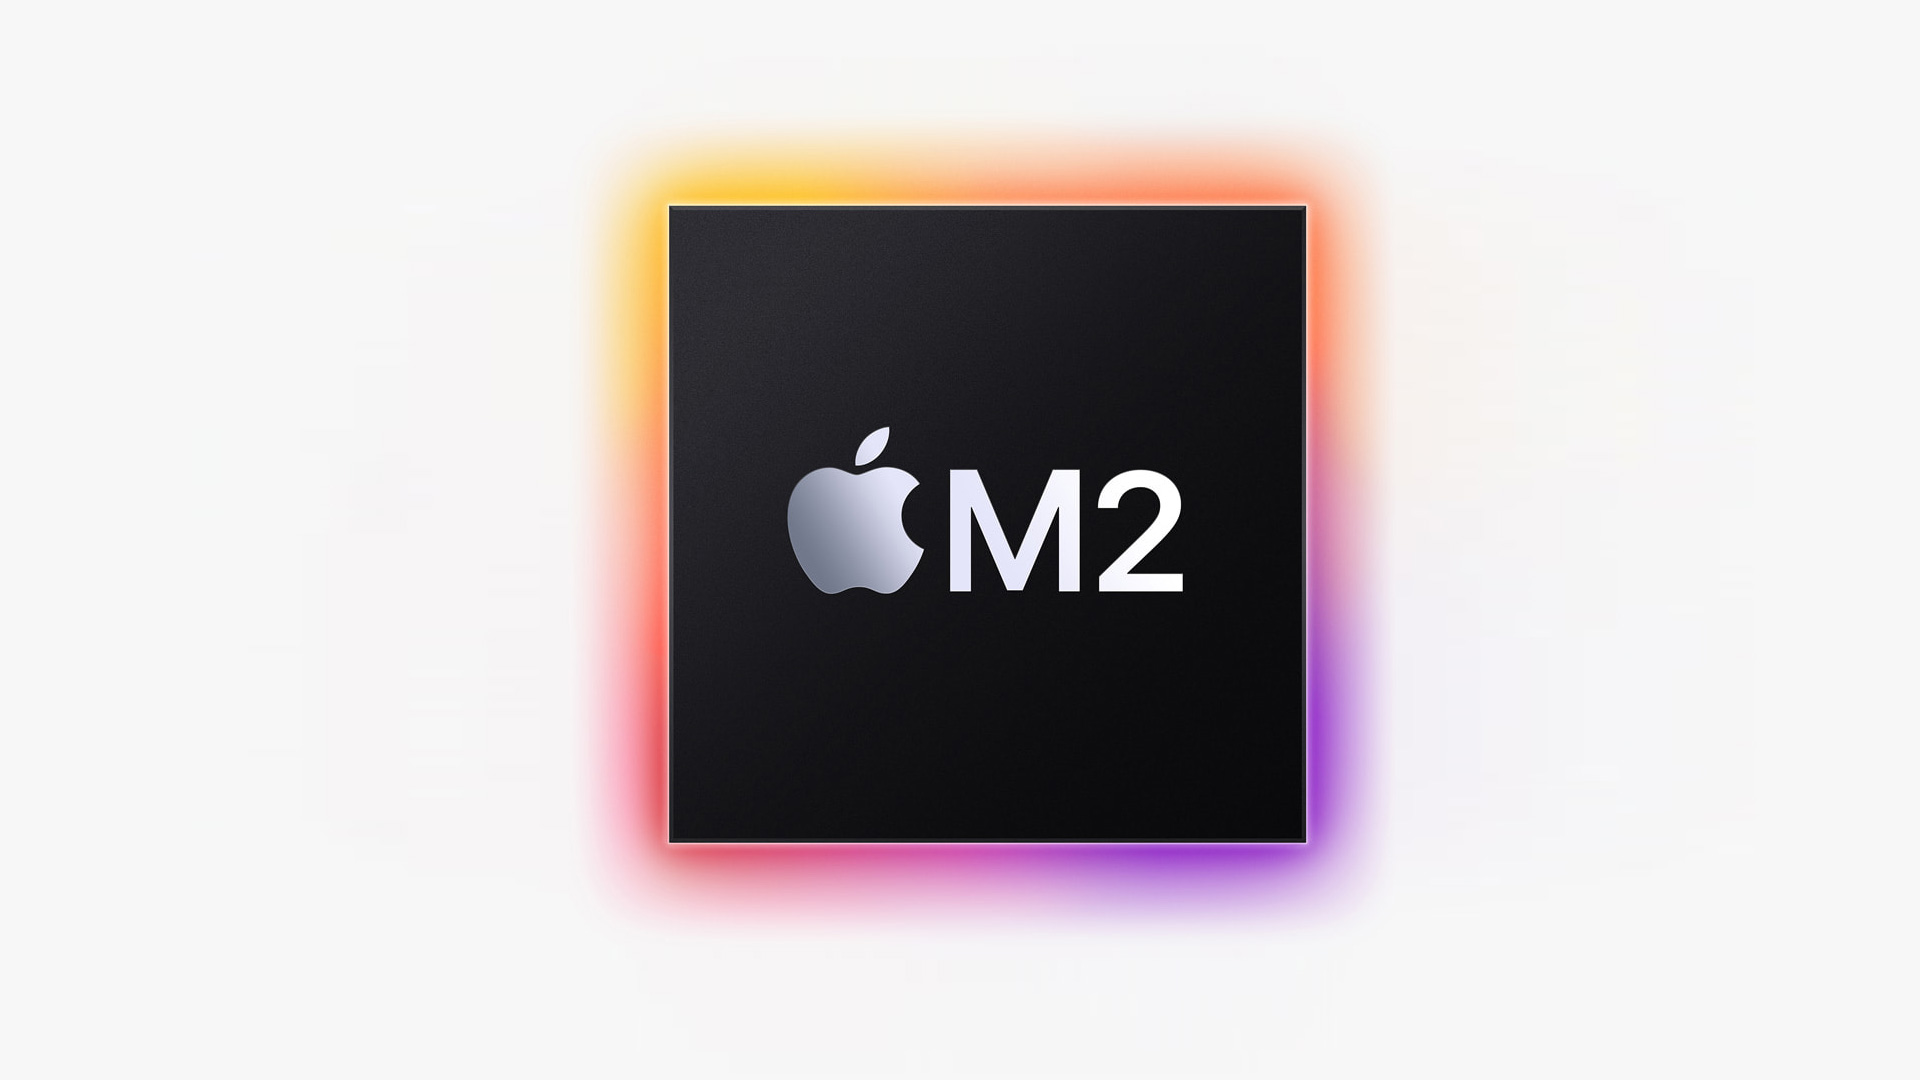 Na WWDC zaprezentowano nowy flagowy procesor Apple M2